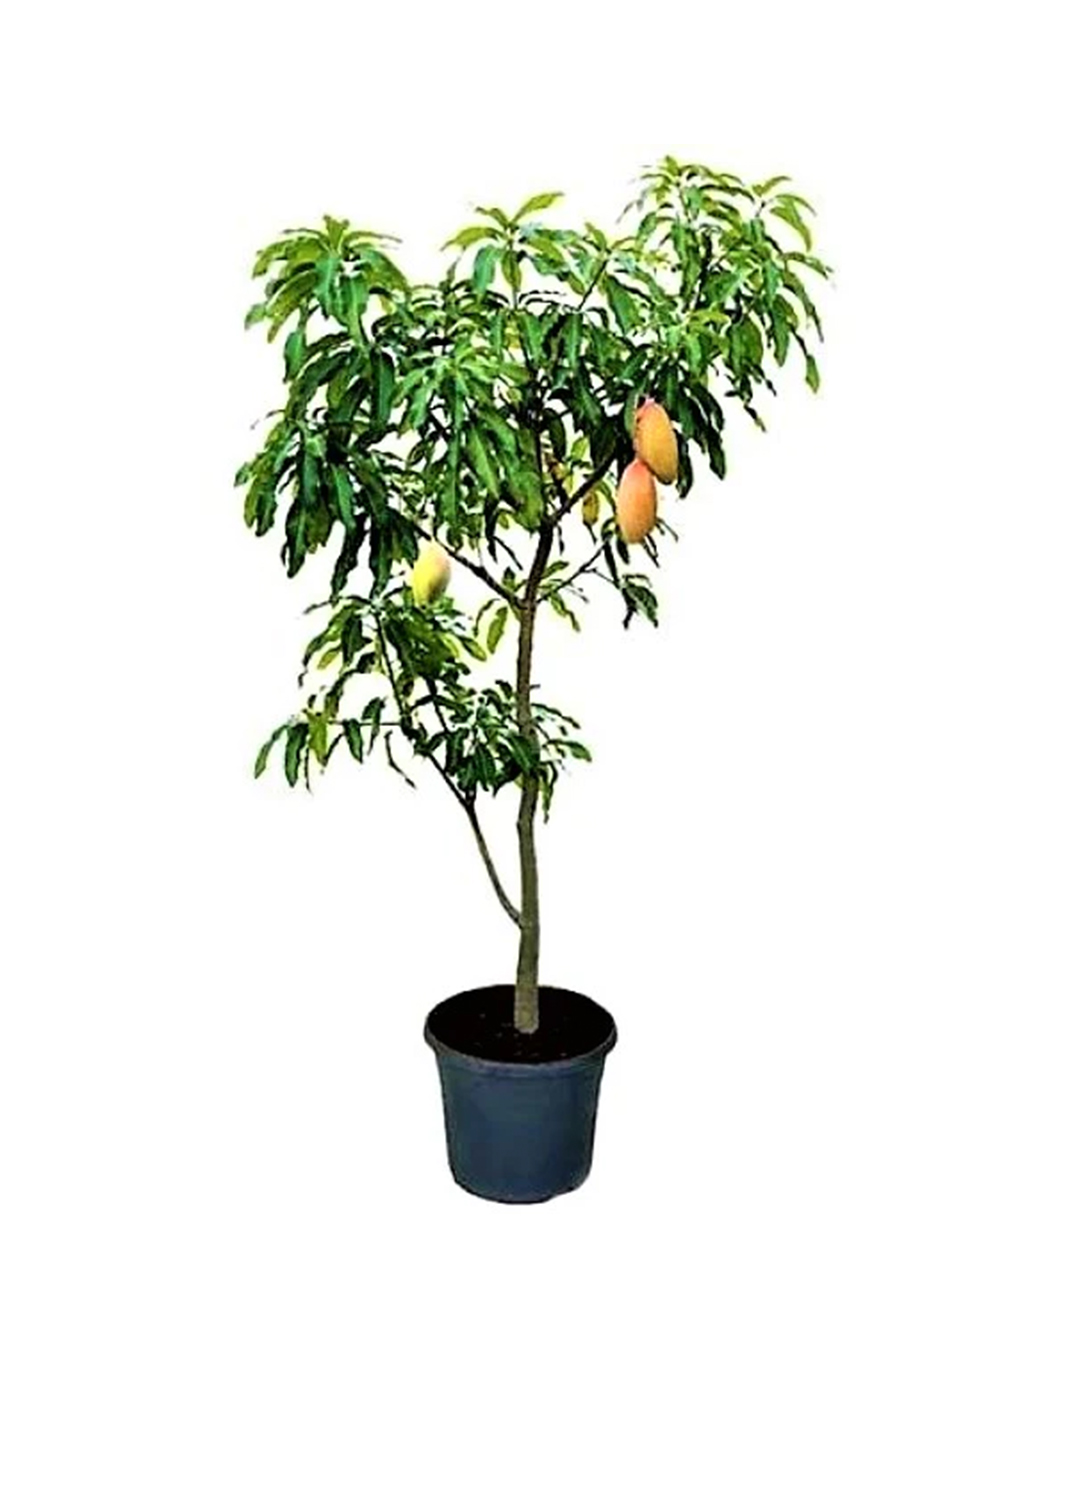 Mangifera indica, Mango Tree